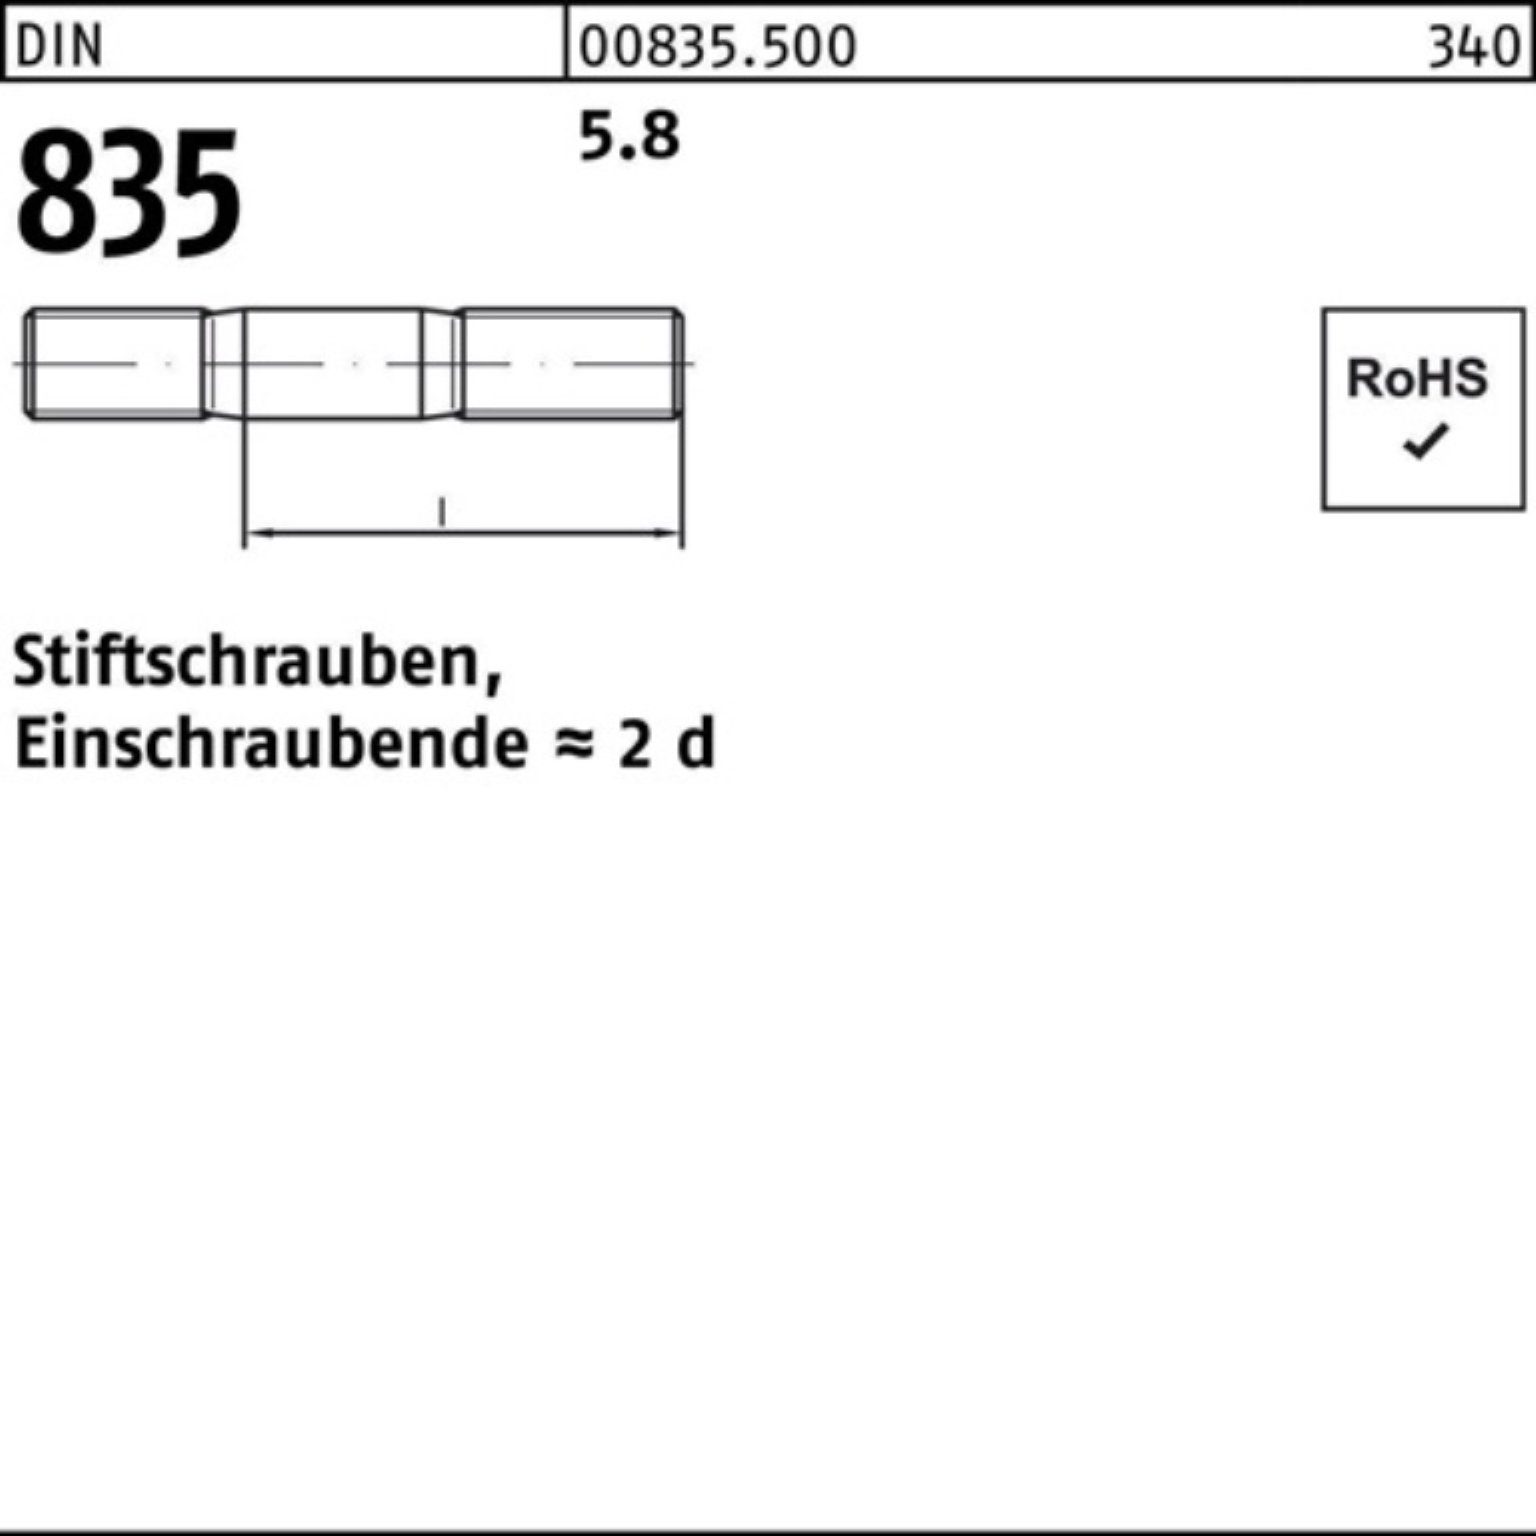 Reyher Stiftschraube 100er St Stiftschraube M10x 5.8 100 50 Einschraubende=2d 835 DIN Pack